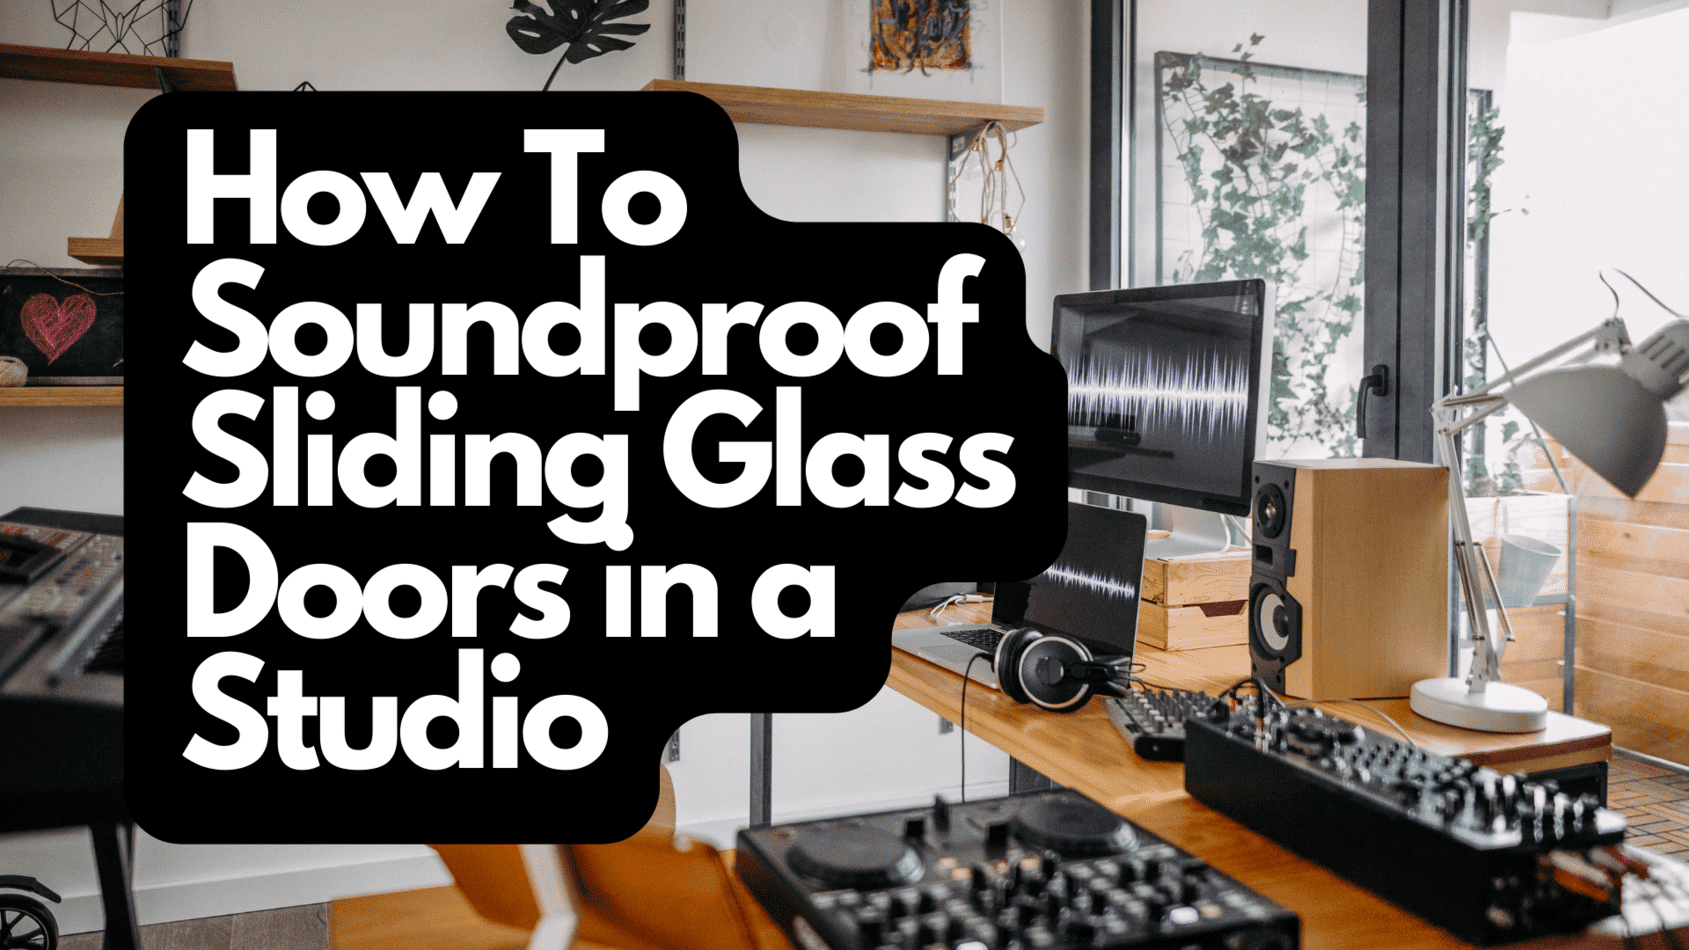 5 Best Soundproof Interior Doors